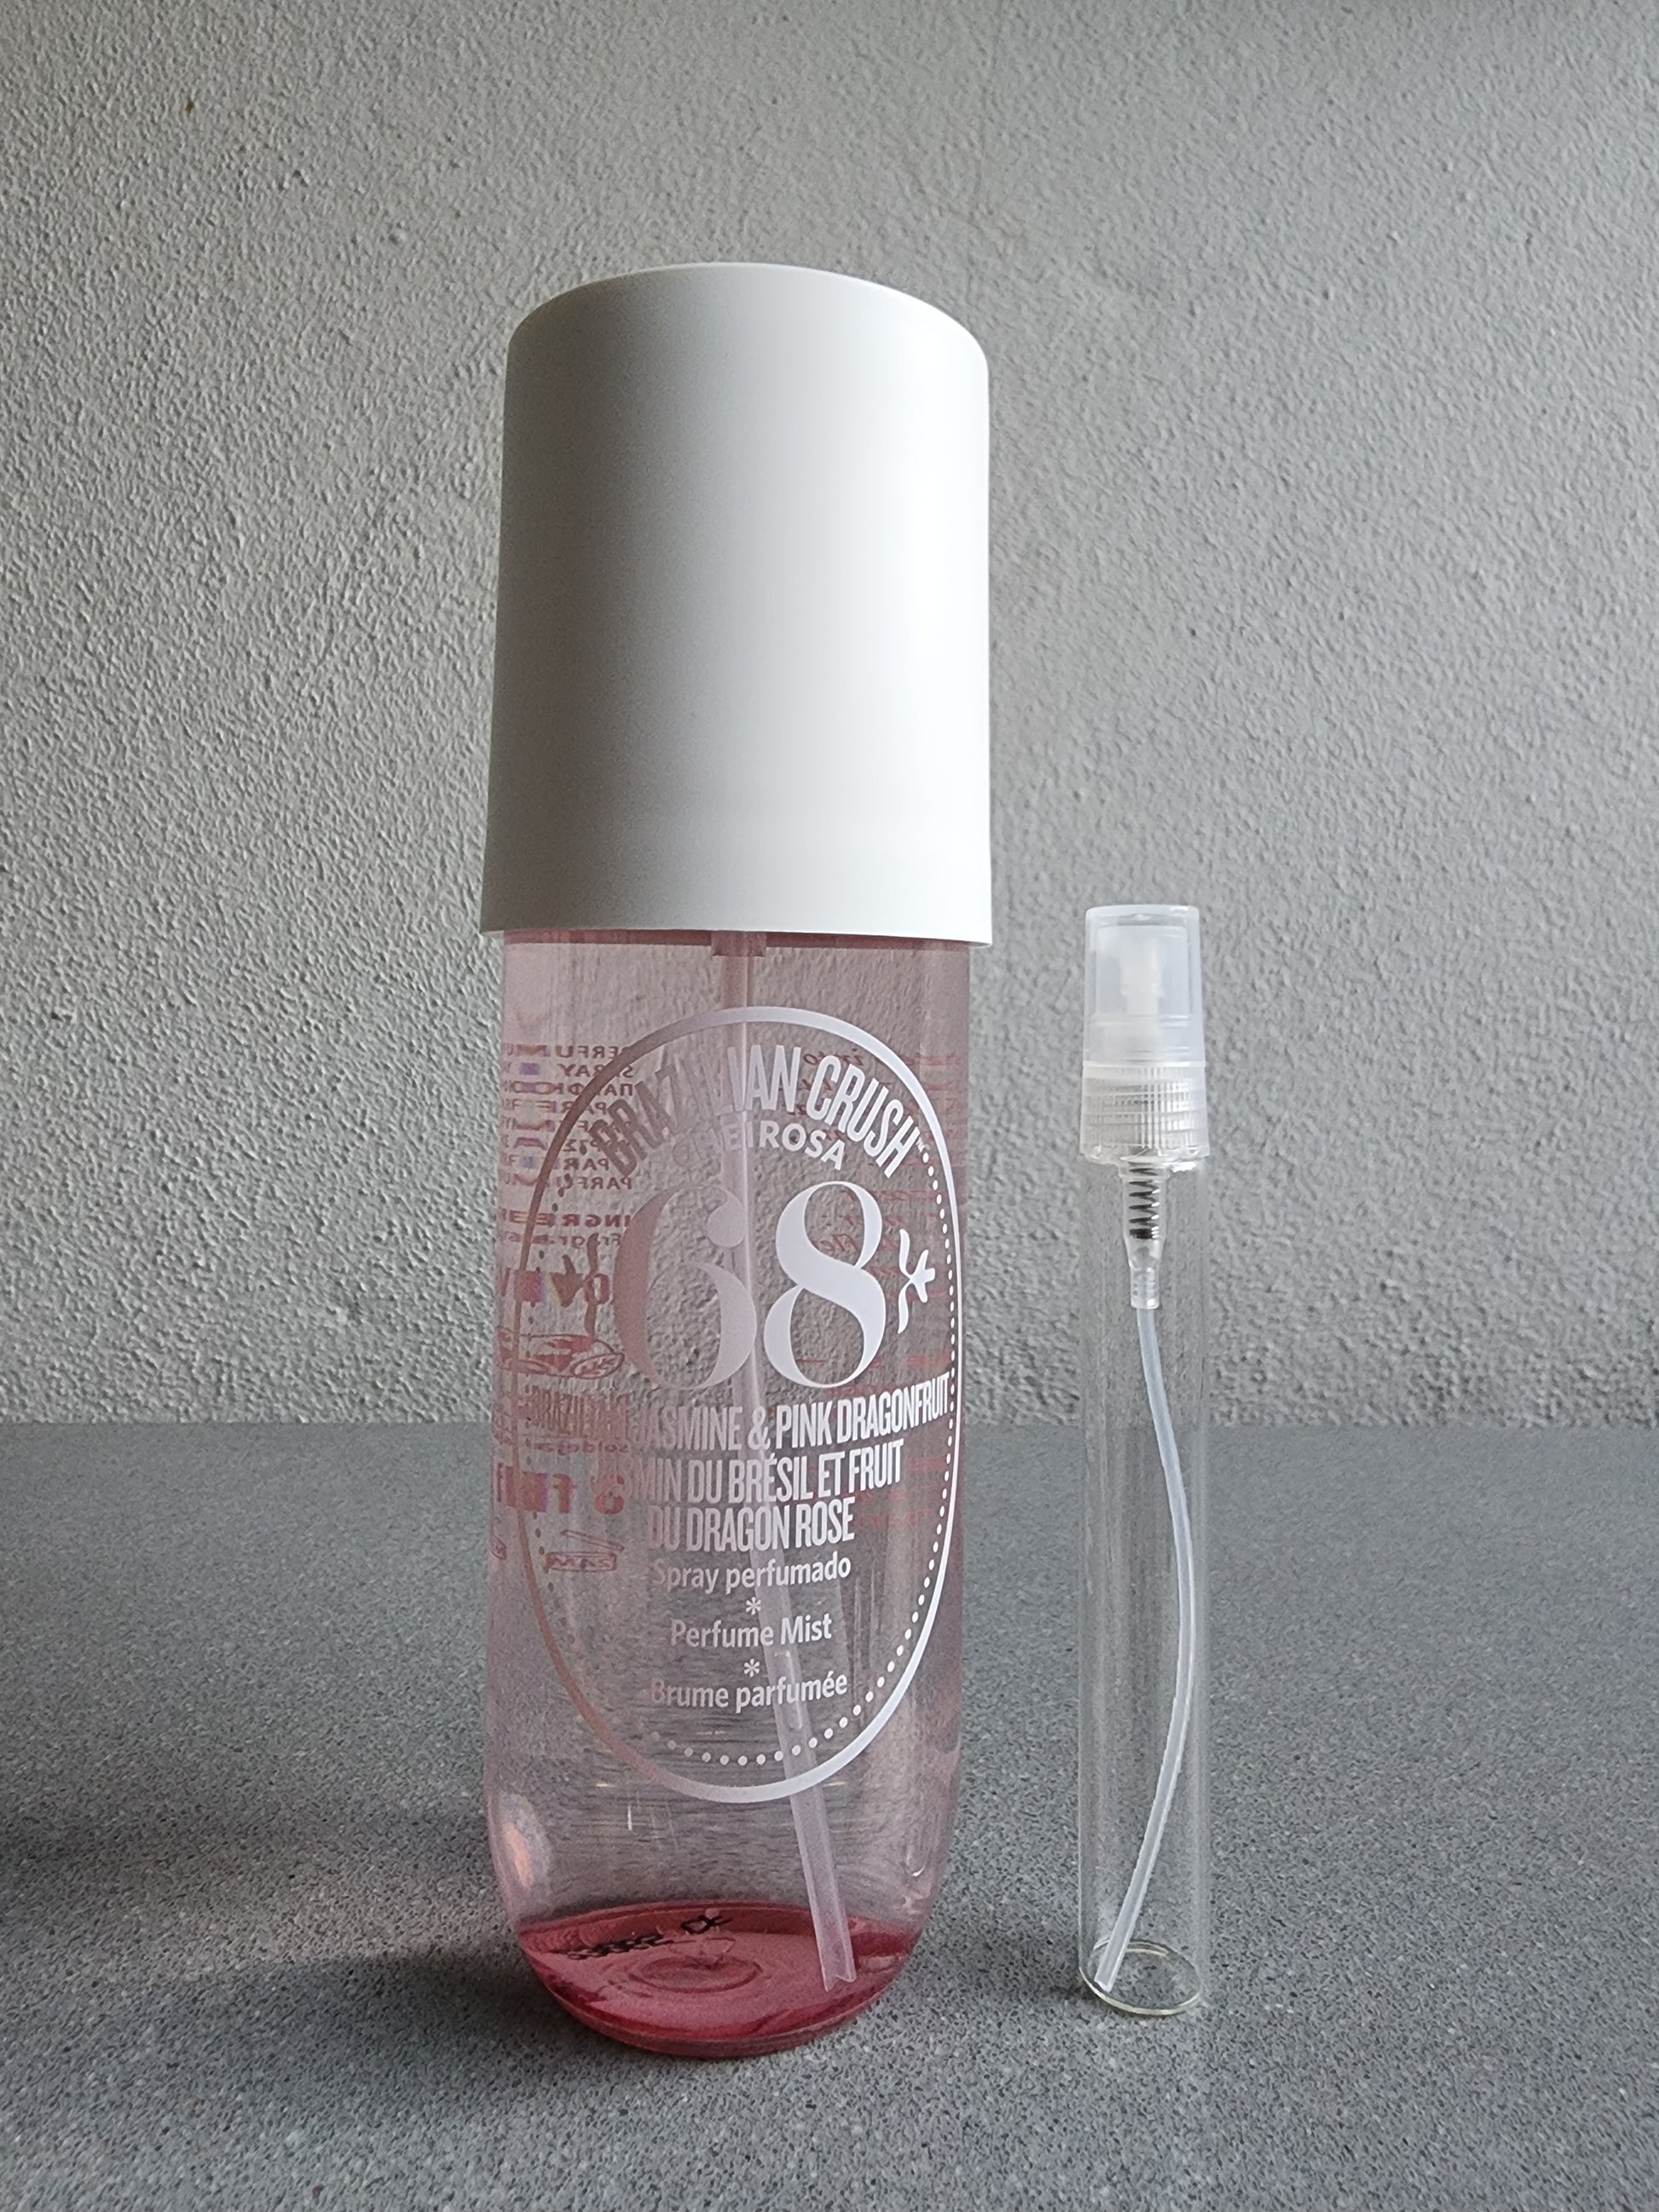 Sol De Janeiro Cheirosa '68: A Review ~ Fragrance Reviews